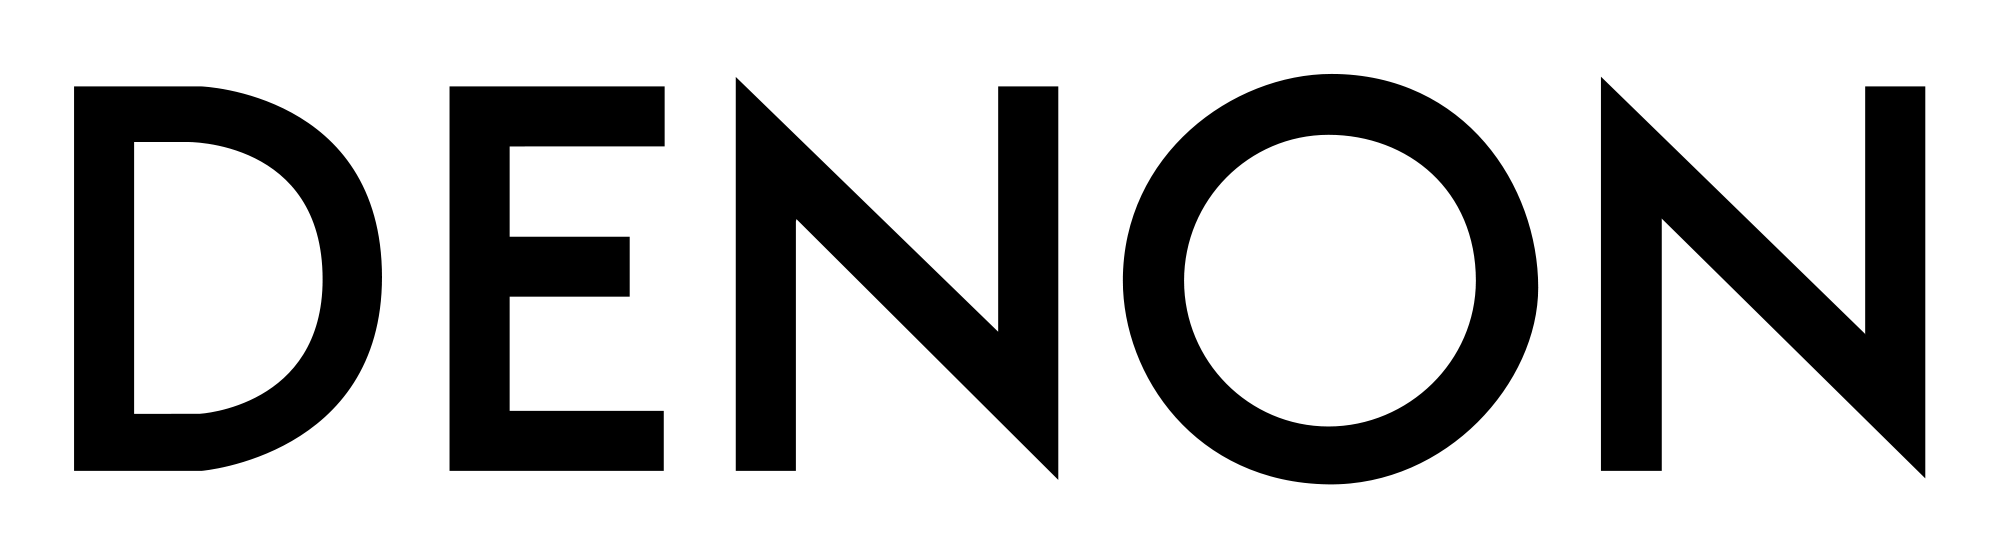 Denon logo.png